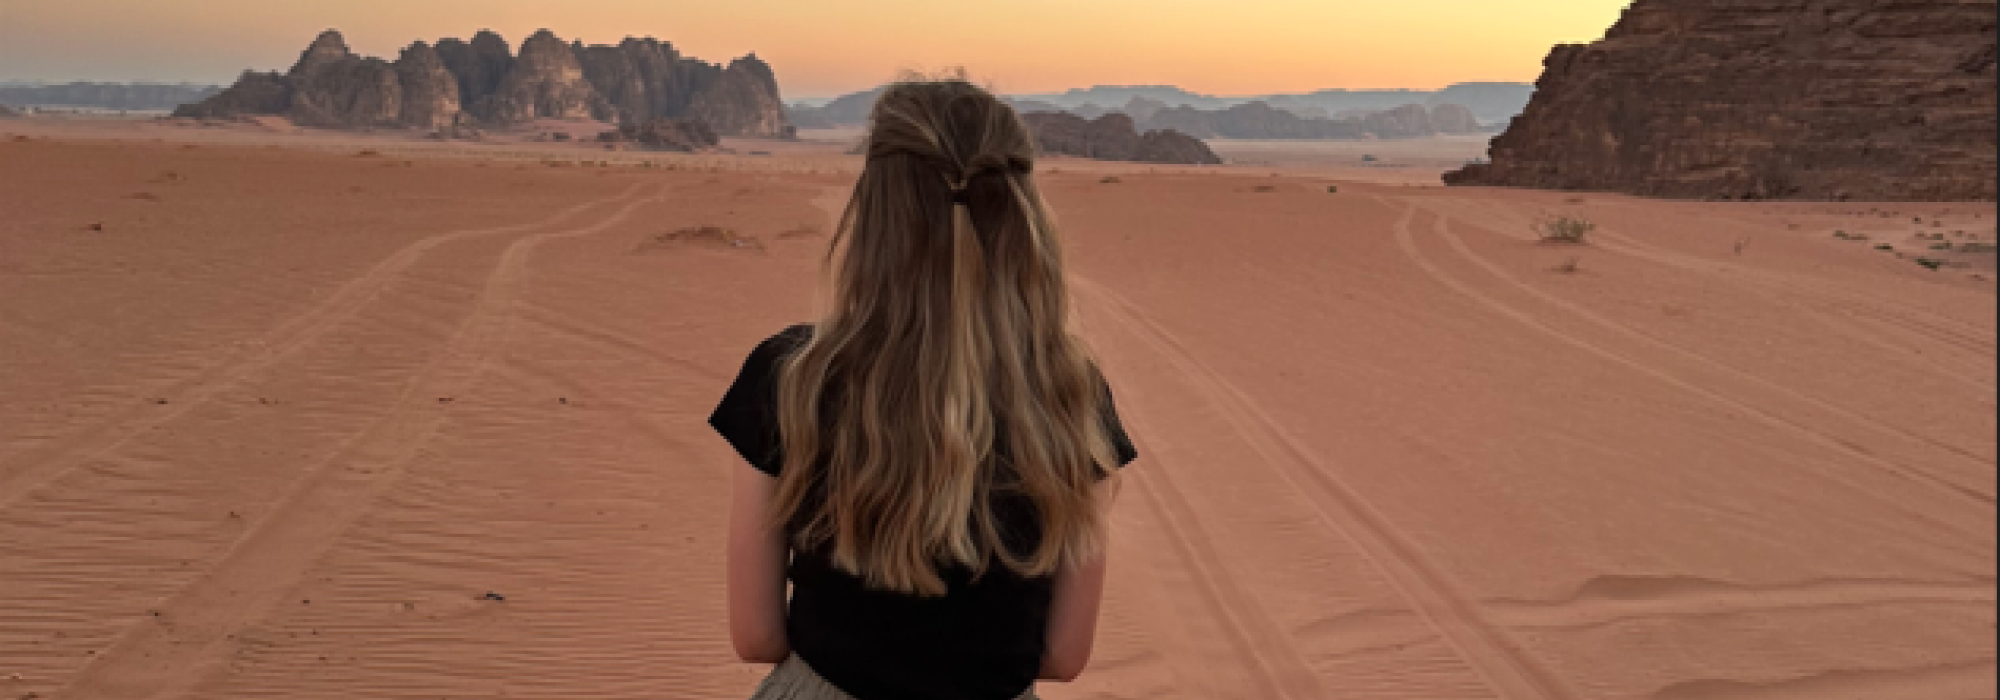 A view of the desert in Jordan